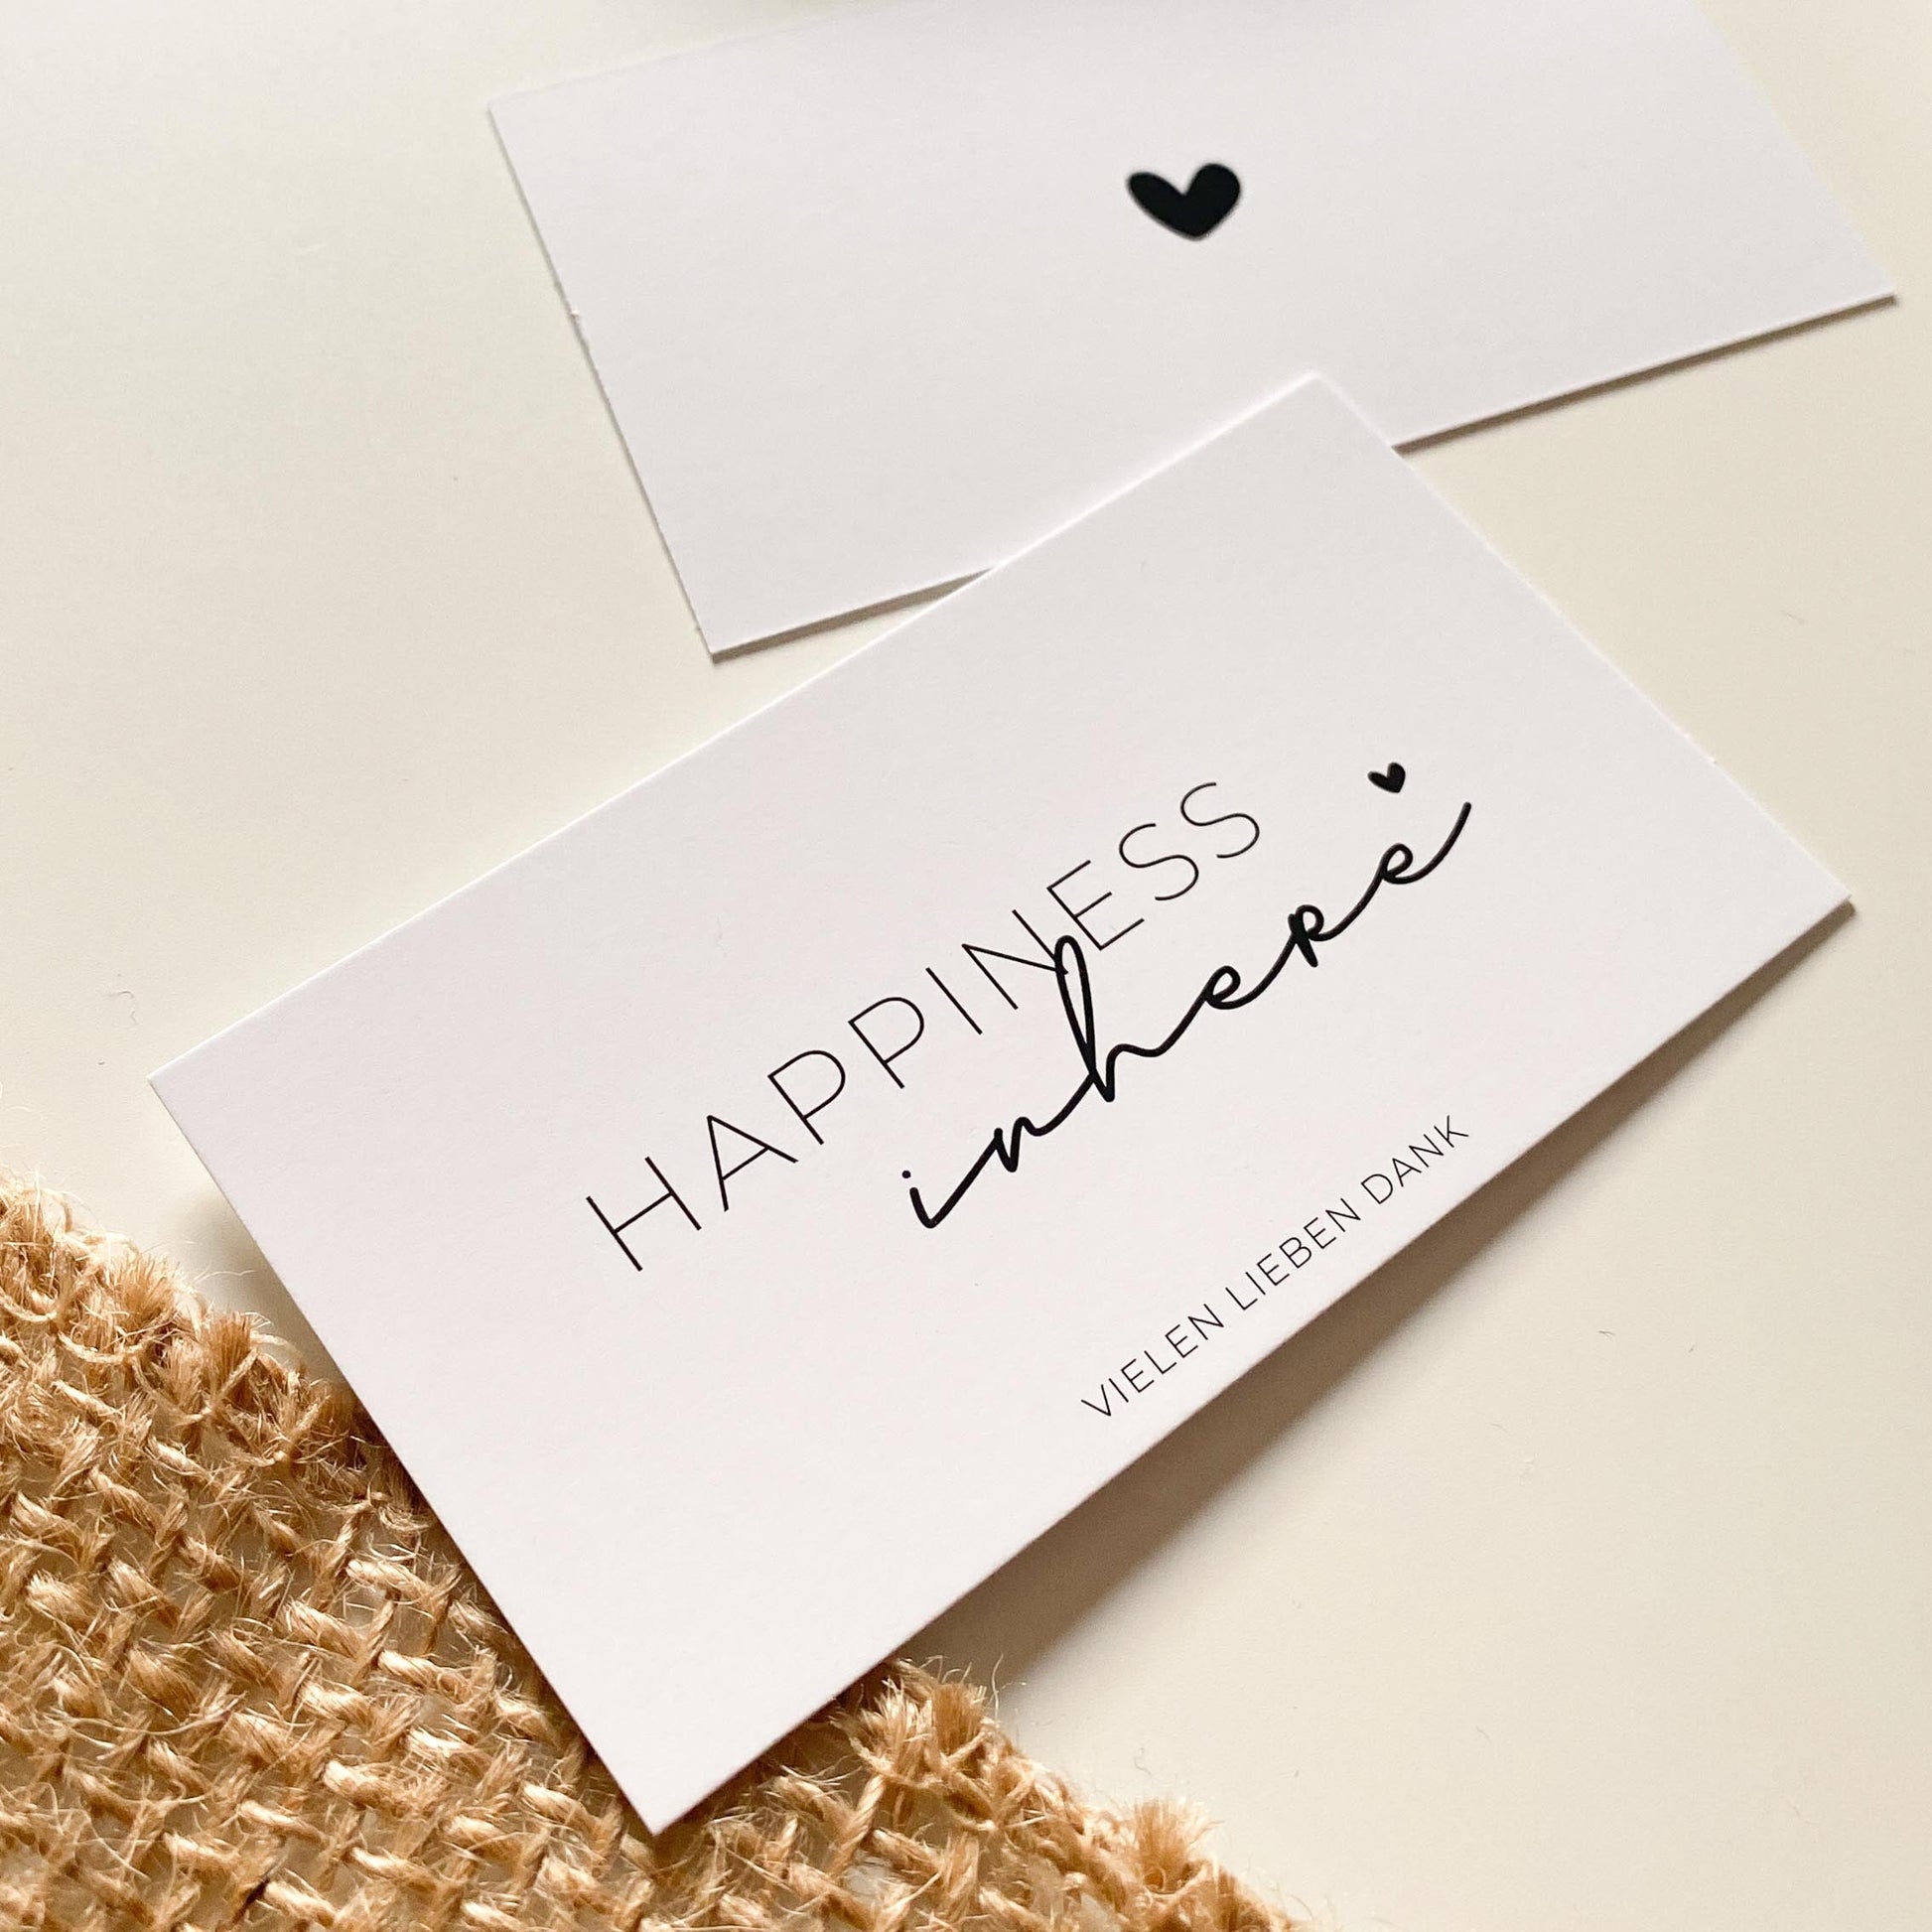 Paketbeileger "Happiness Inhere" weiß/schwarz 9 x 5 cm packsome 